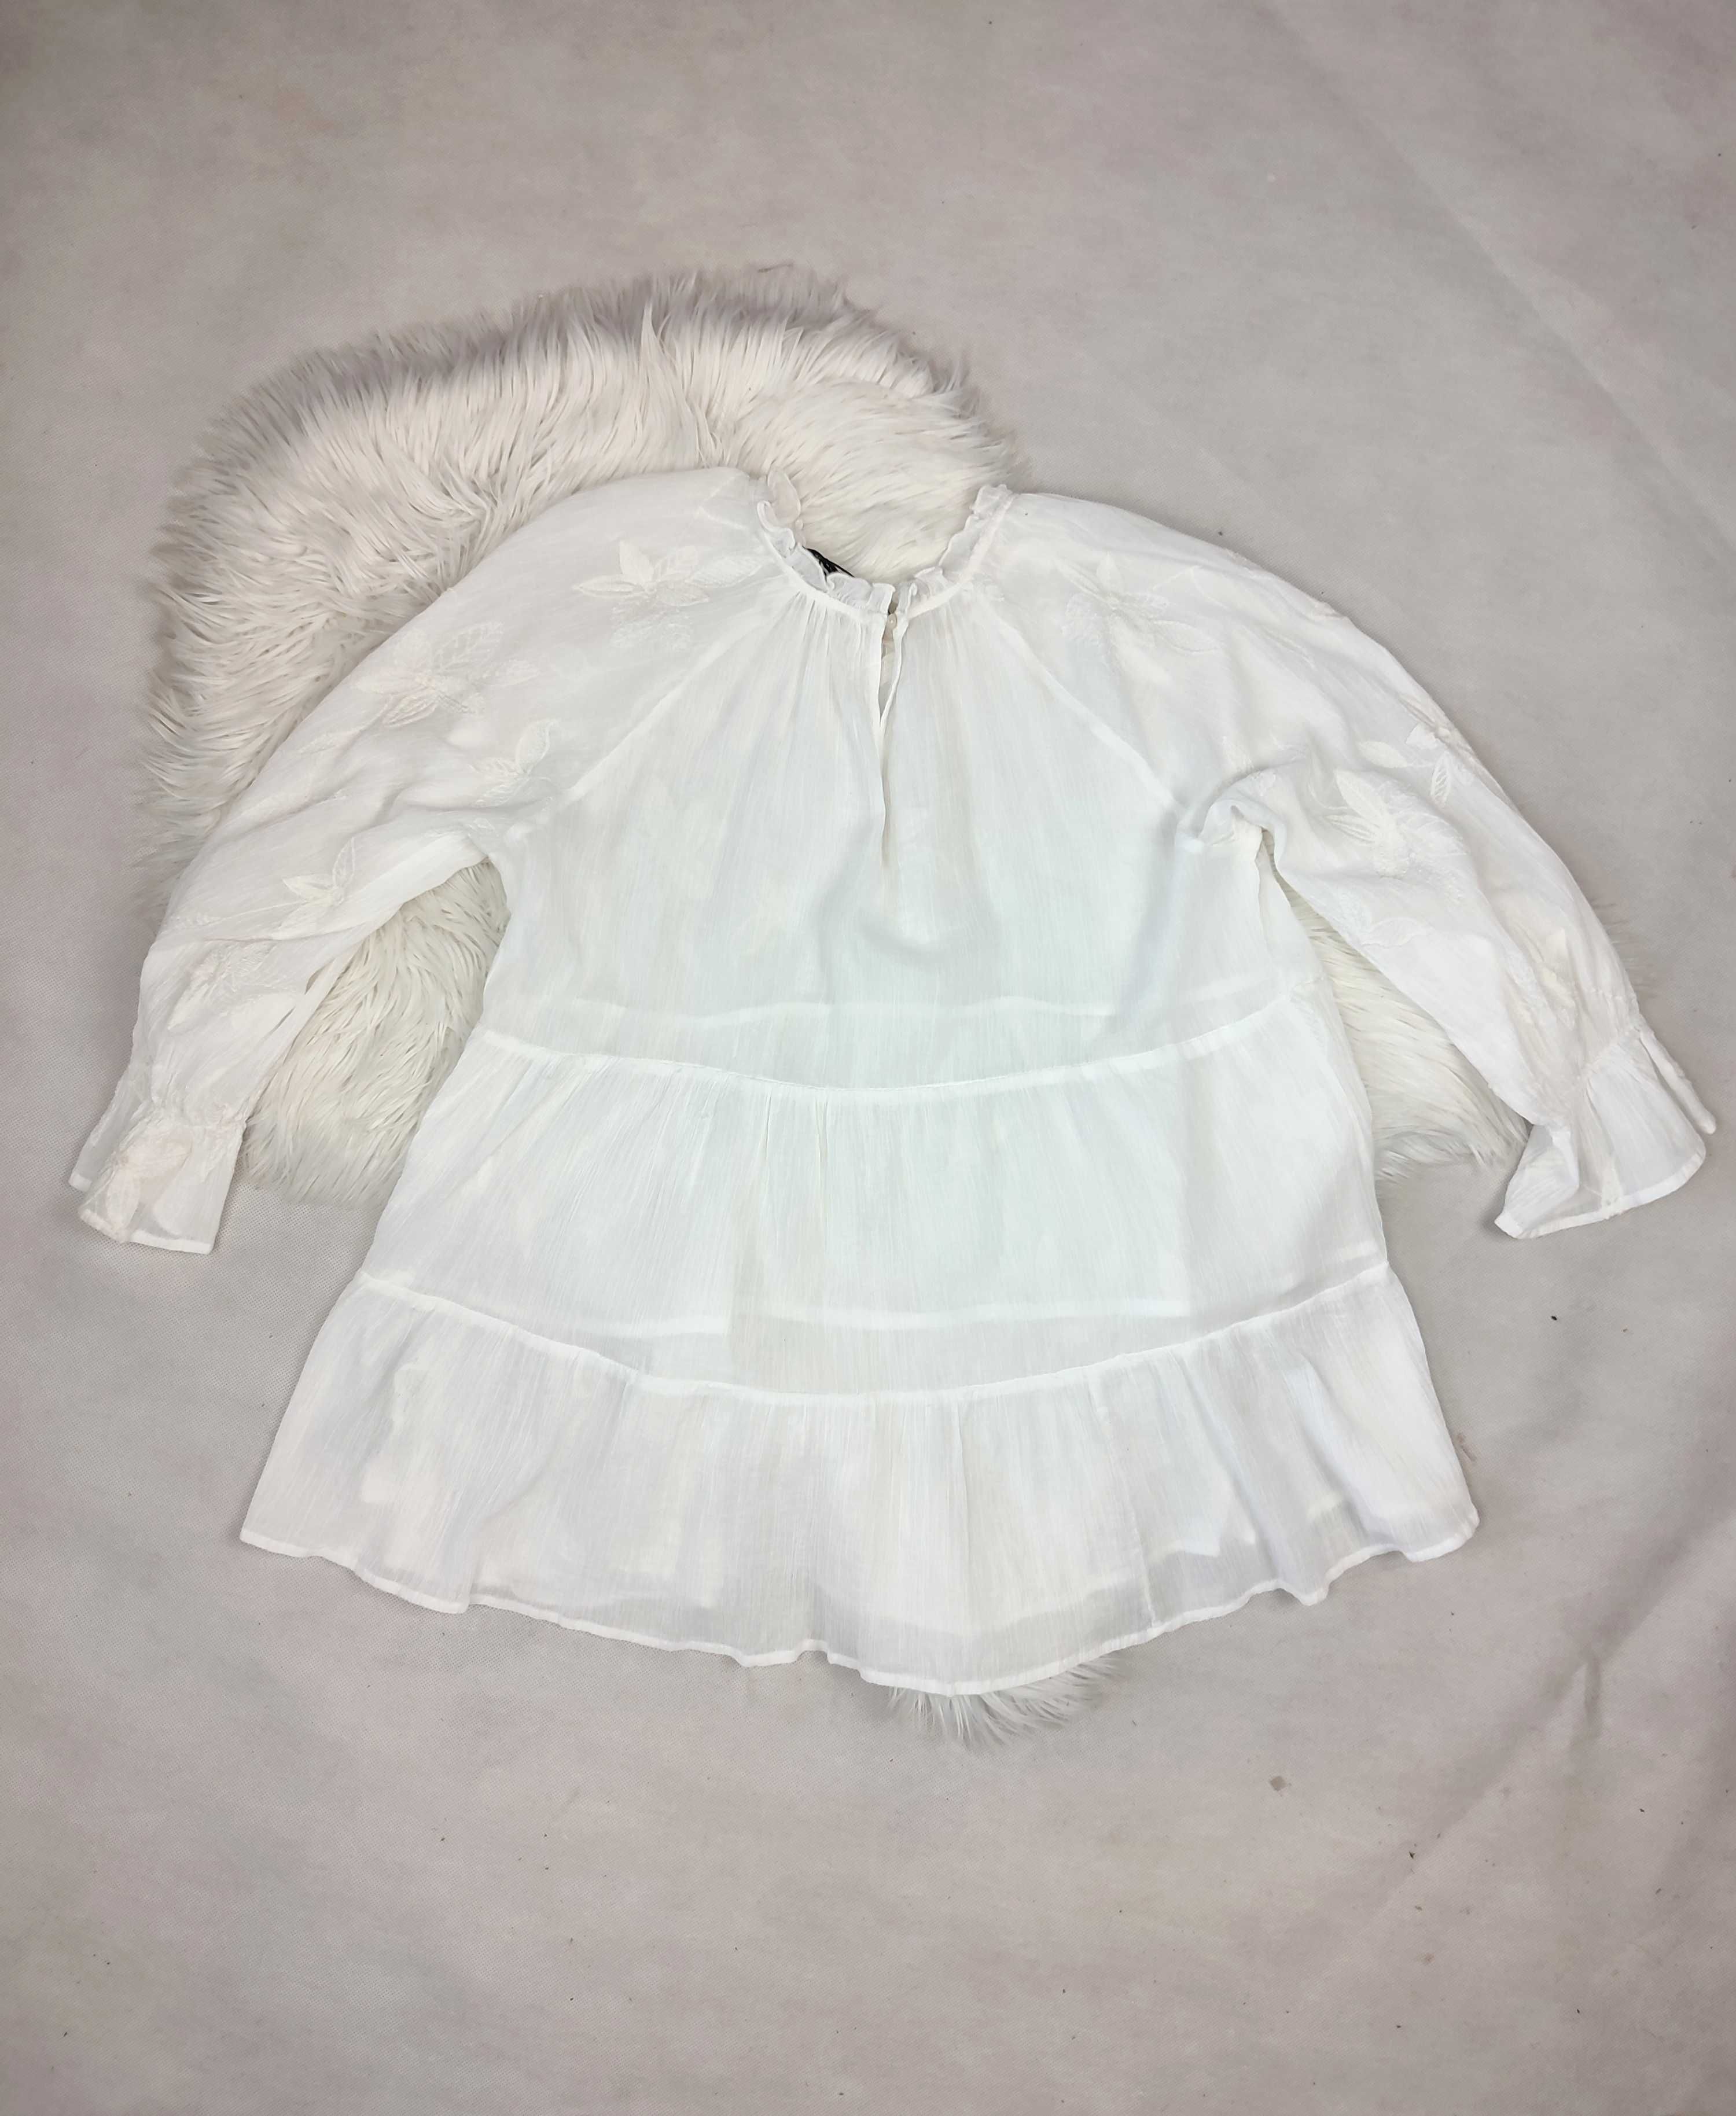 Śnieżnobiała bluzka damska elegancka przewiewna bawełna Zara r. M/38